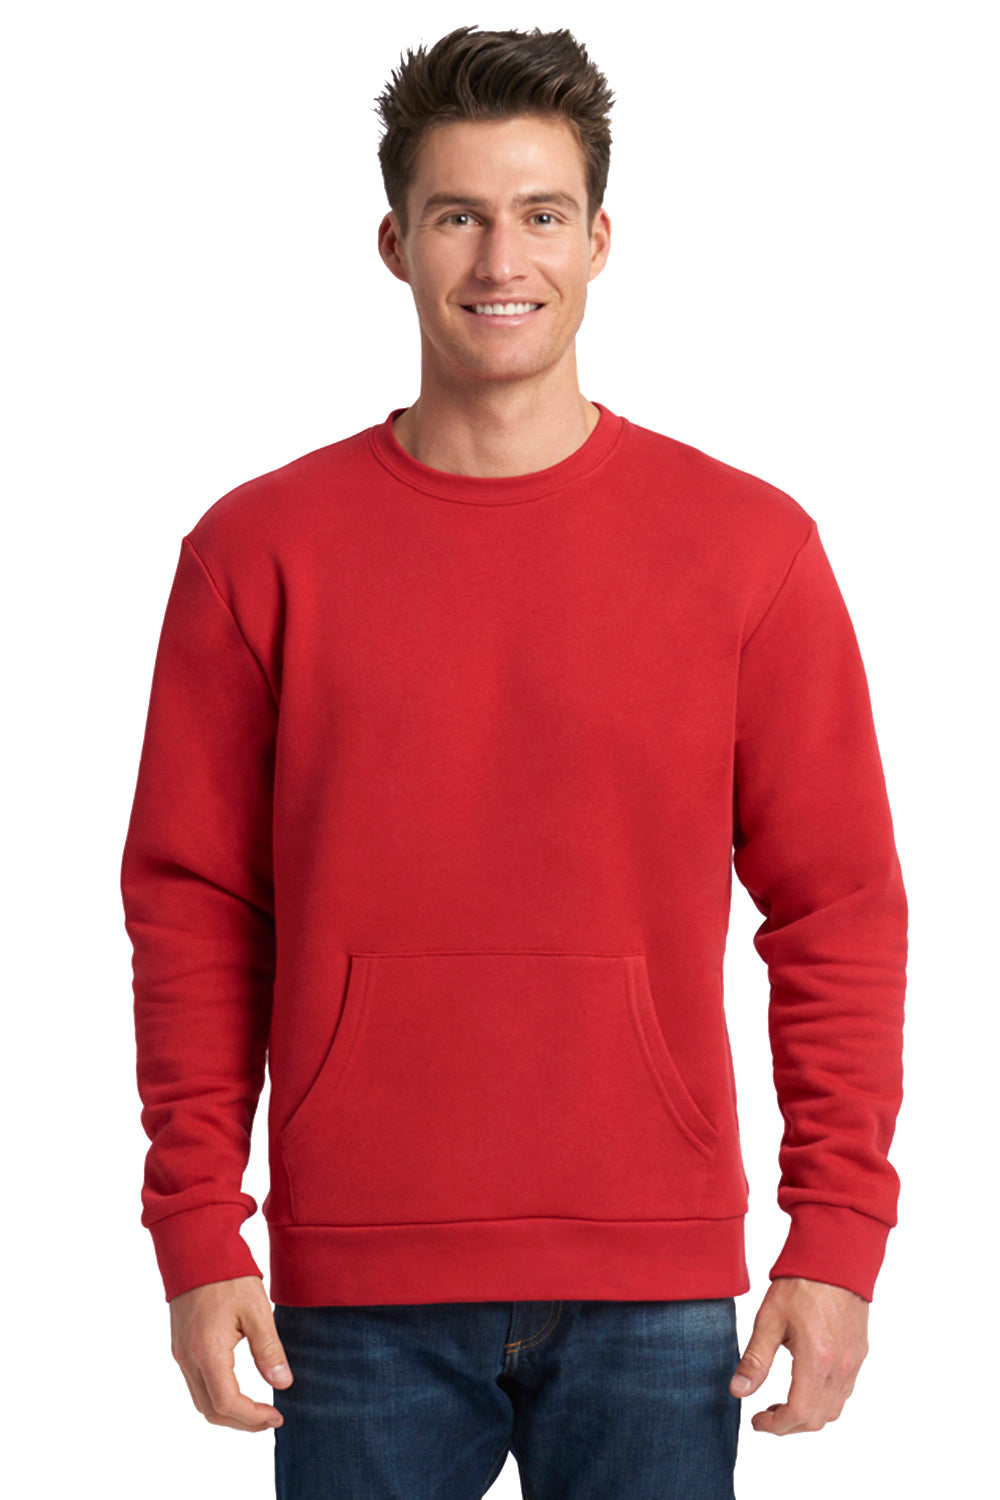 Next Level 9001 Fleece Crewneck Sweatshirt Red Front